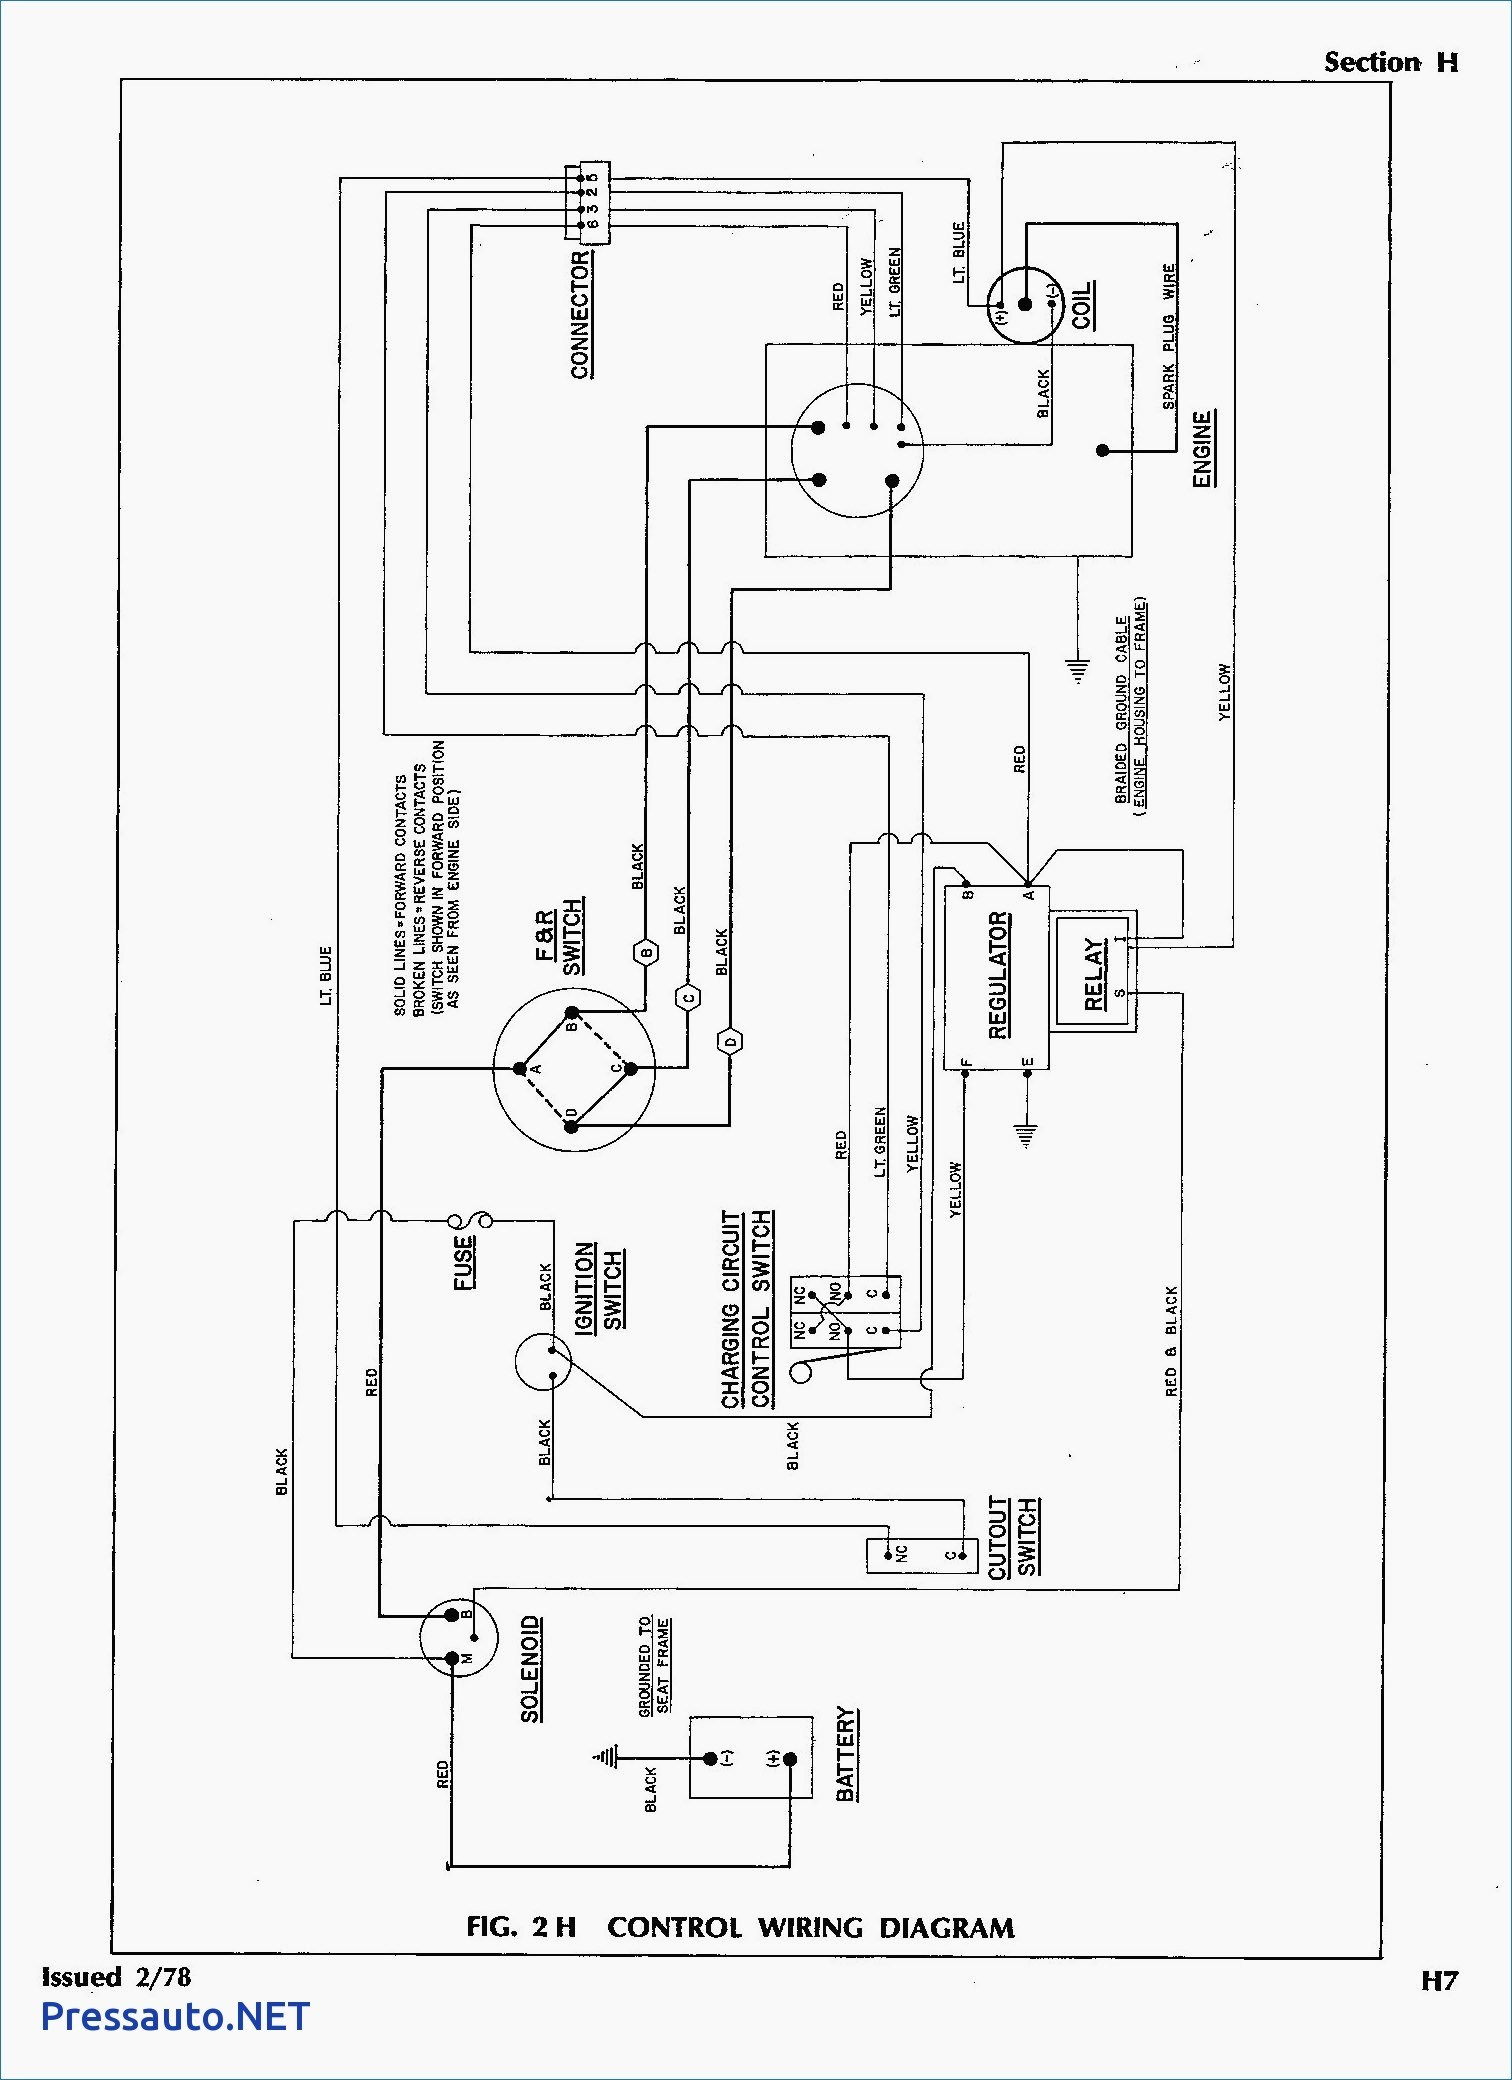 Ezgo Golf Cart Wiring Diagram 36 Volt 1998 - Wiring Diagram Explained - Ezgo 36 Volt Wiring Diagram